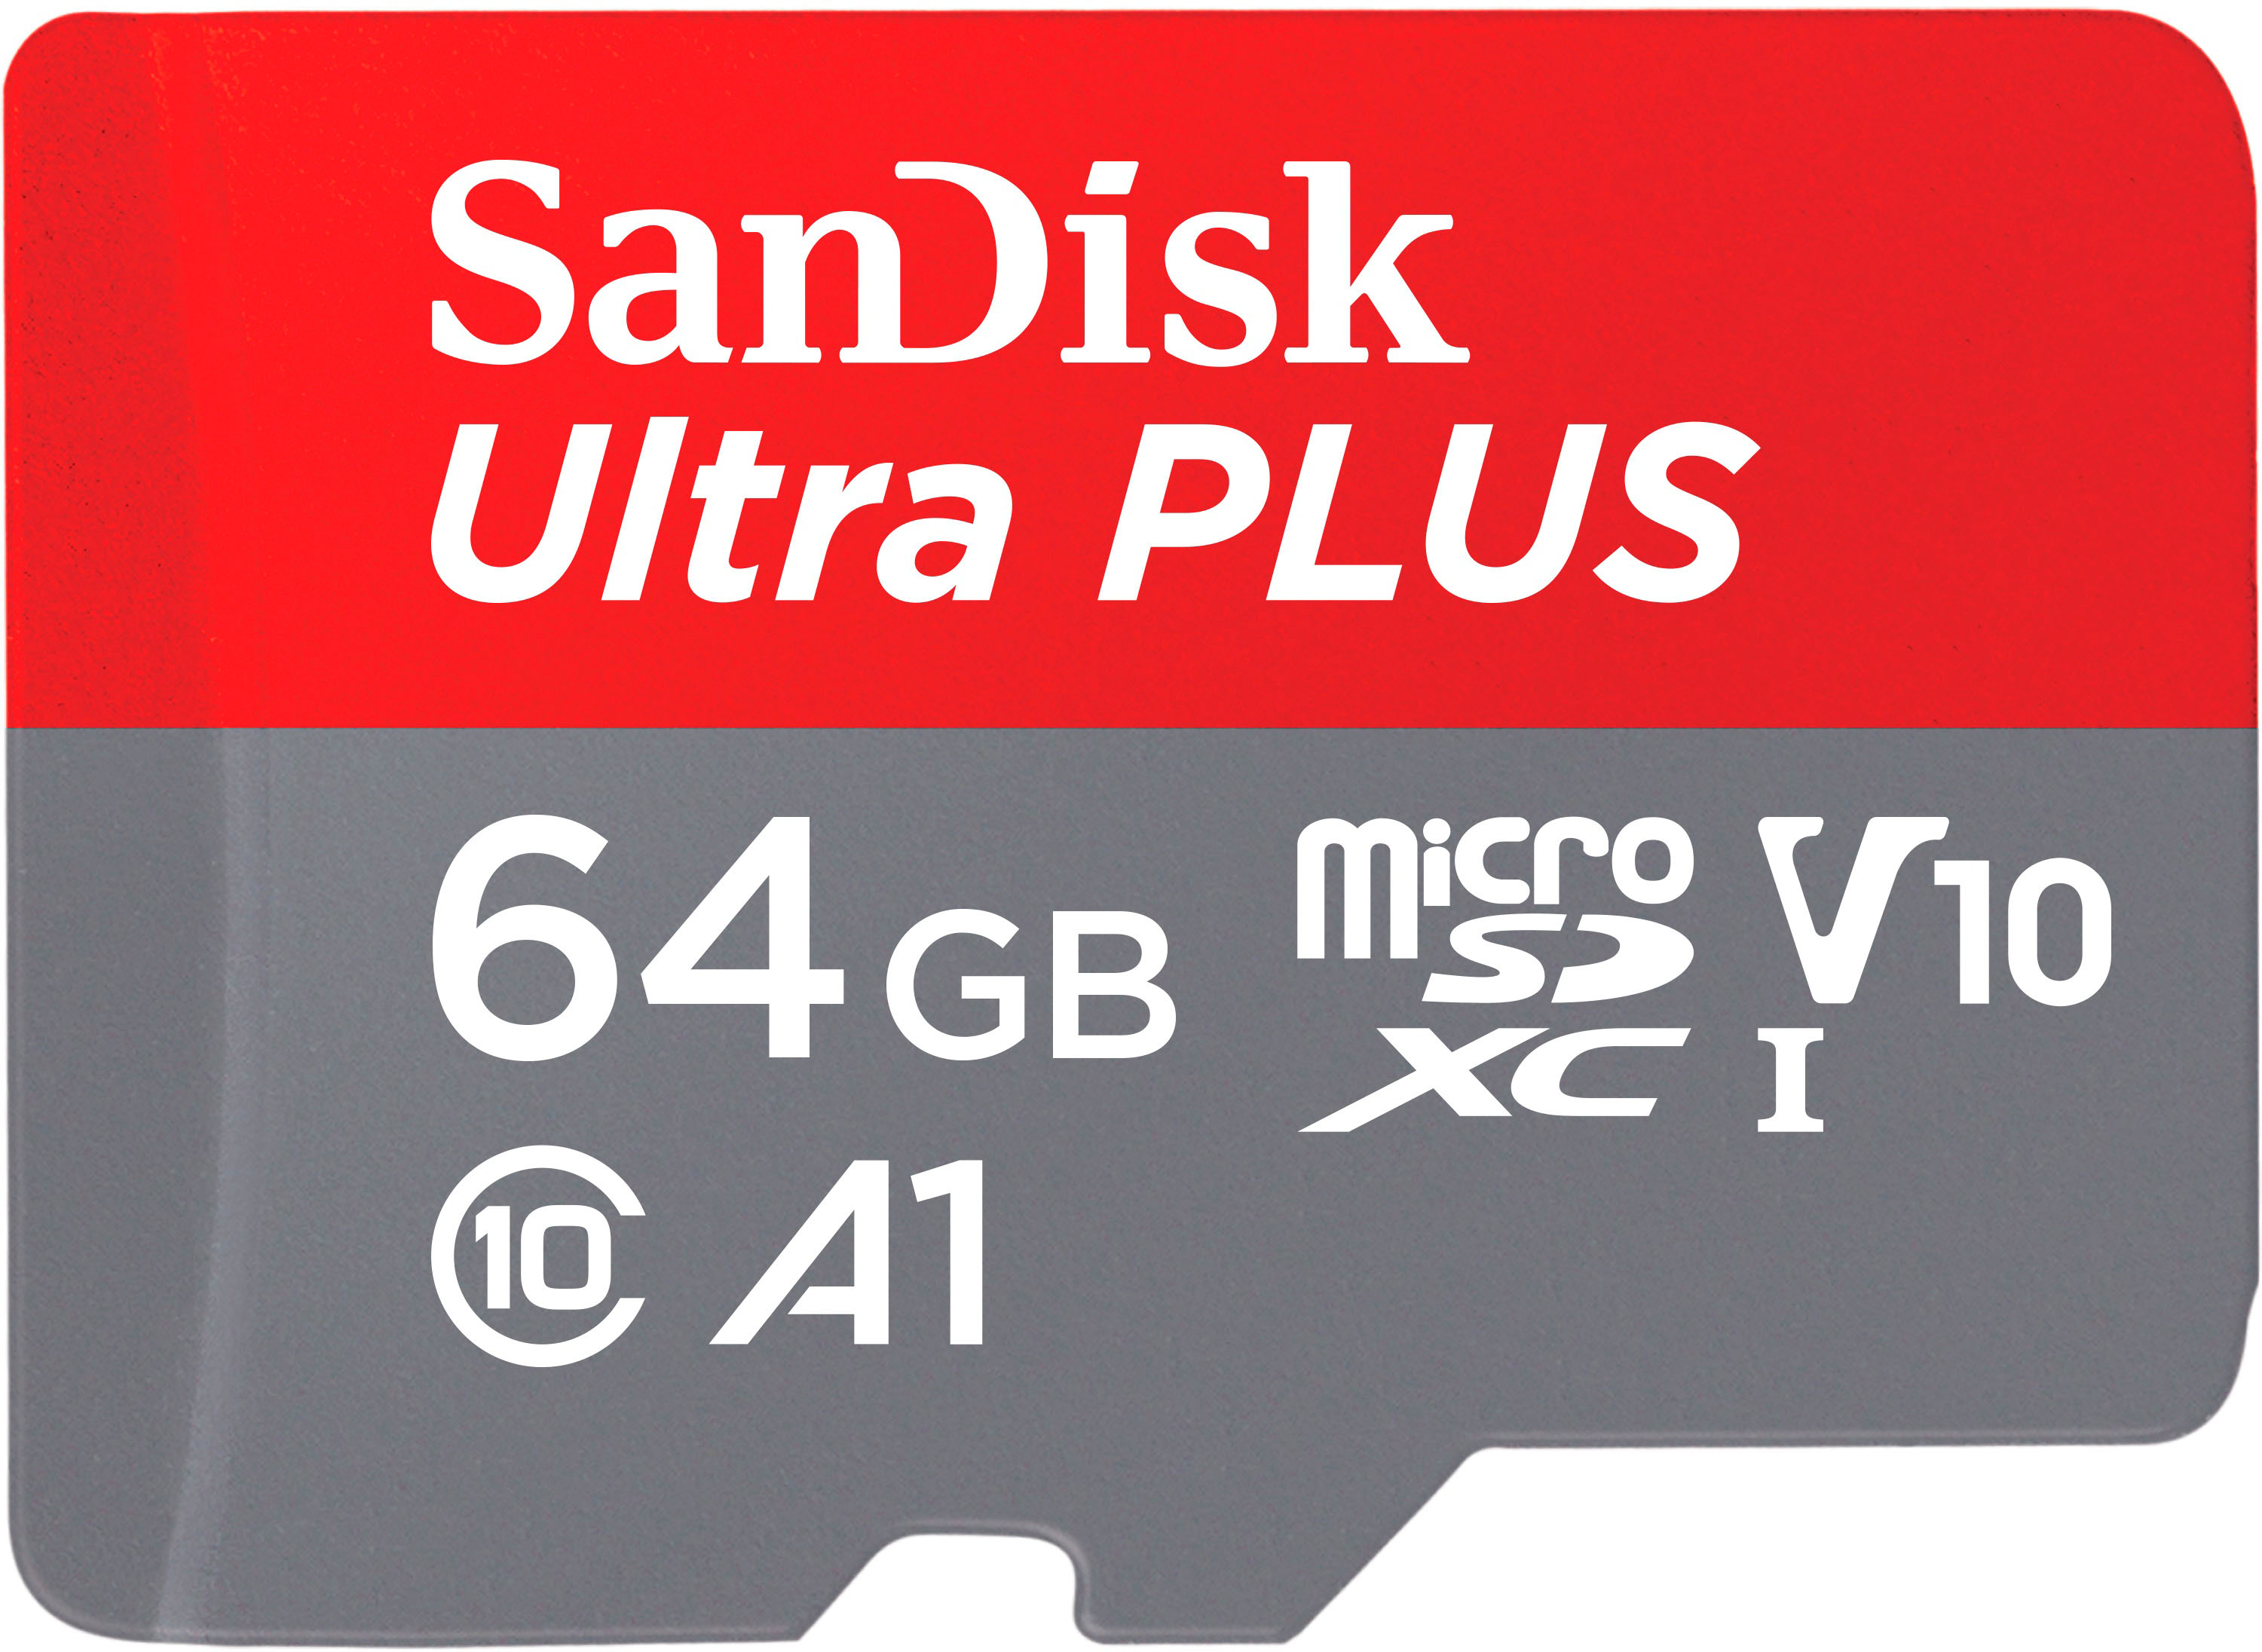 SDXC Cards: SDXC Digital Memory - Best Buy